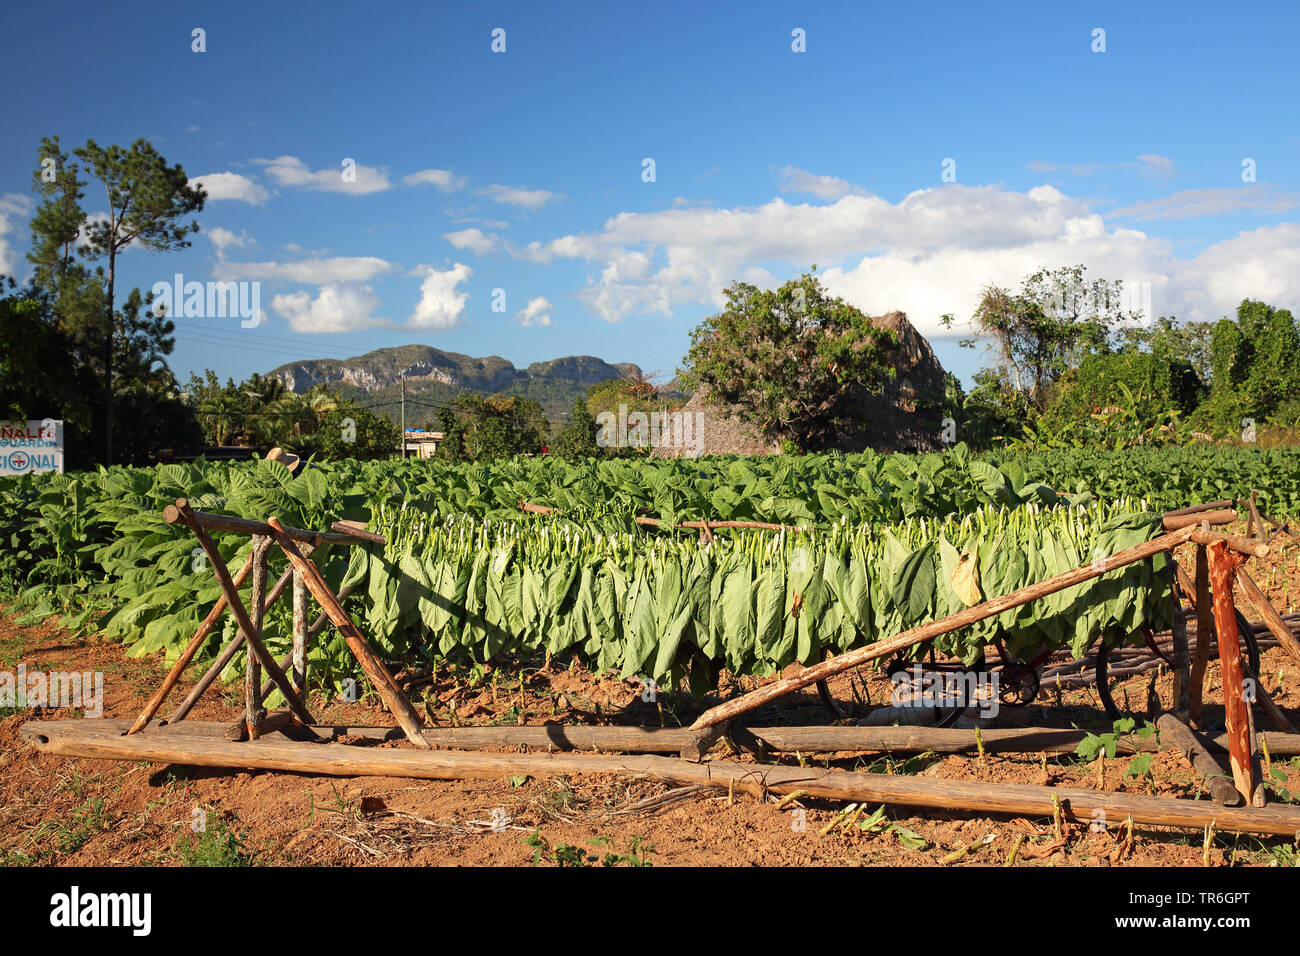 Tabac cultivé, tabac commun, le tabac (Nicotiana tabacum), séchage de feuilles à un champ de tabac, Cuba, Vinales Banque D'Images